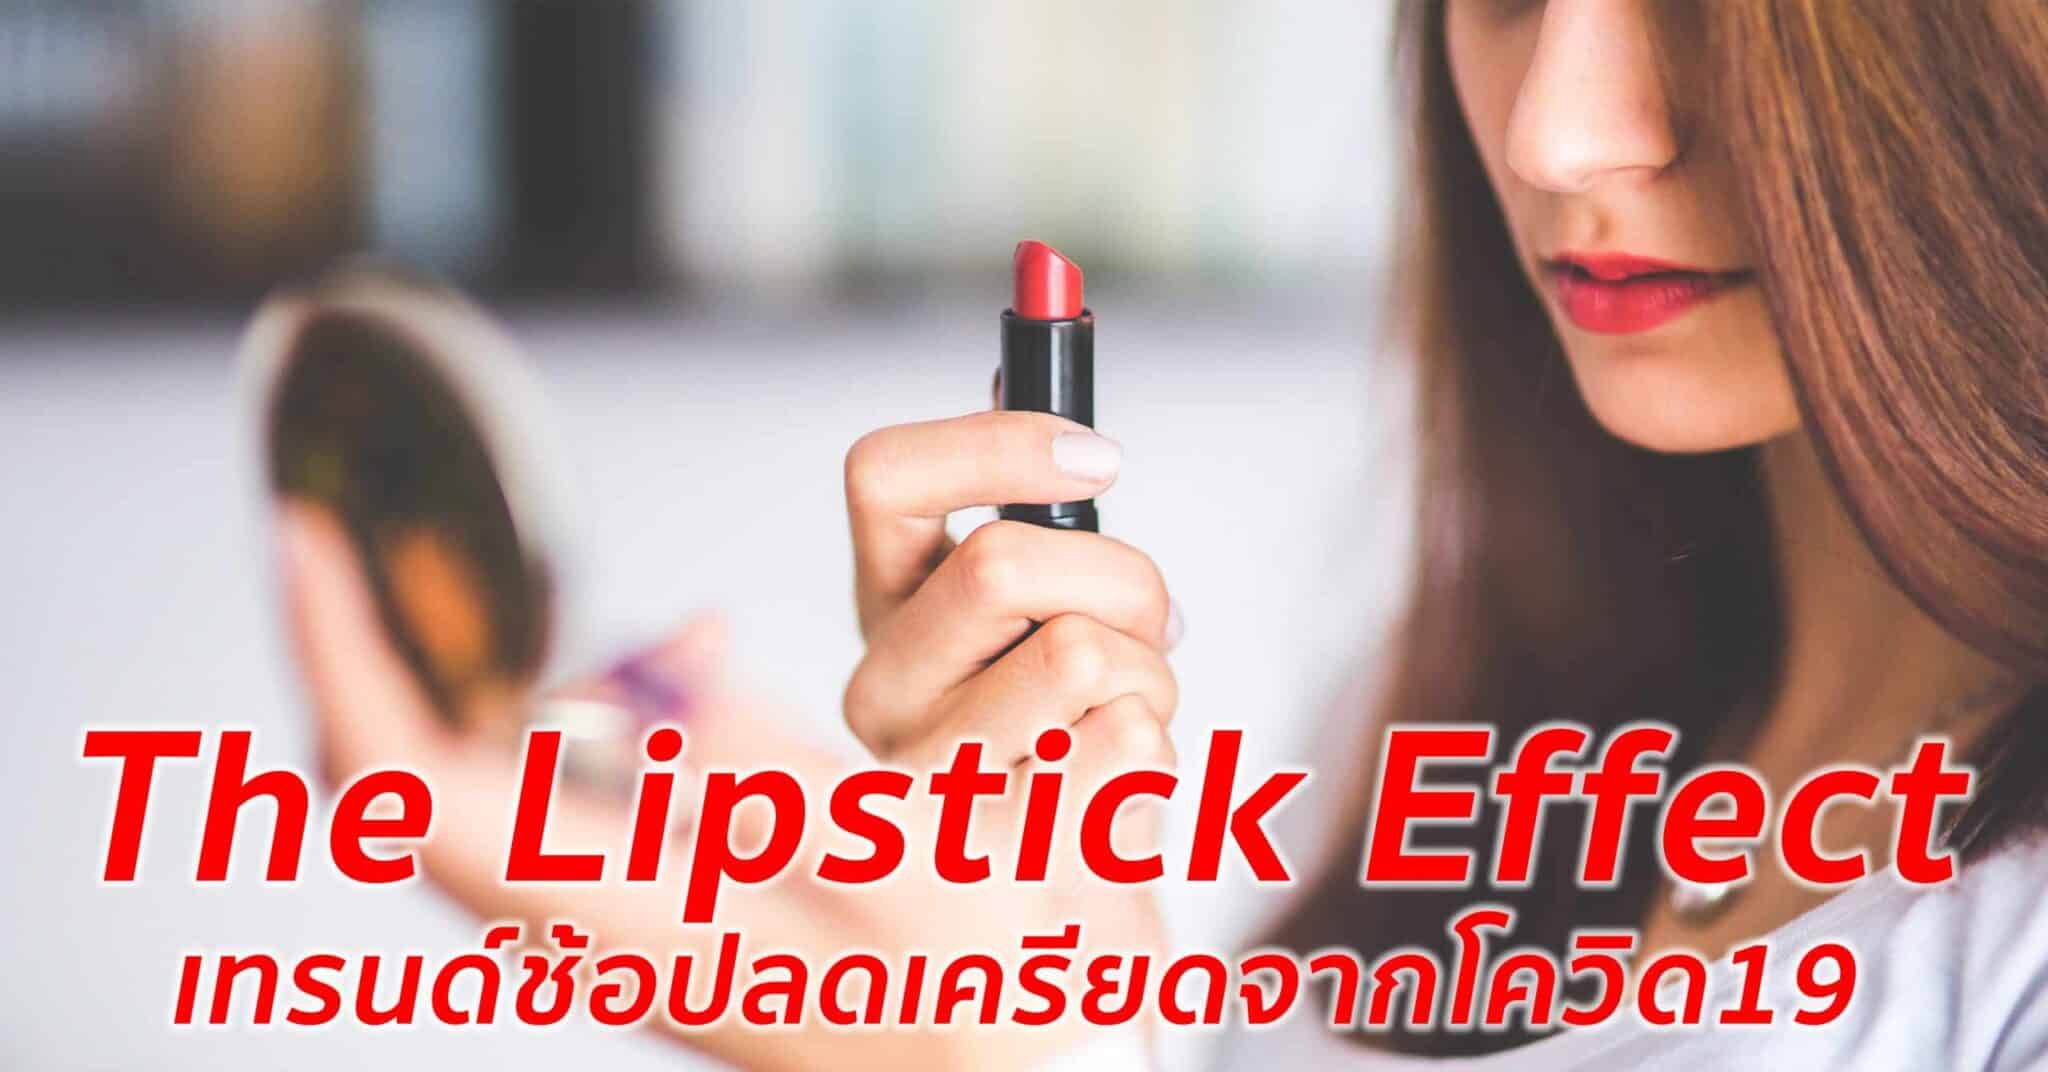 The Lipstick Effect เทรนด์ช้อปของที่ดีต่อใจเพื่อคลายเครียดในช่วง COVID-19